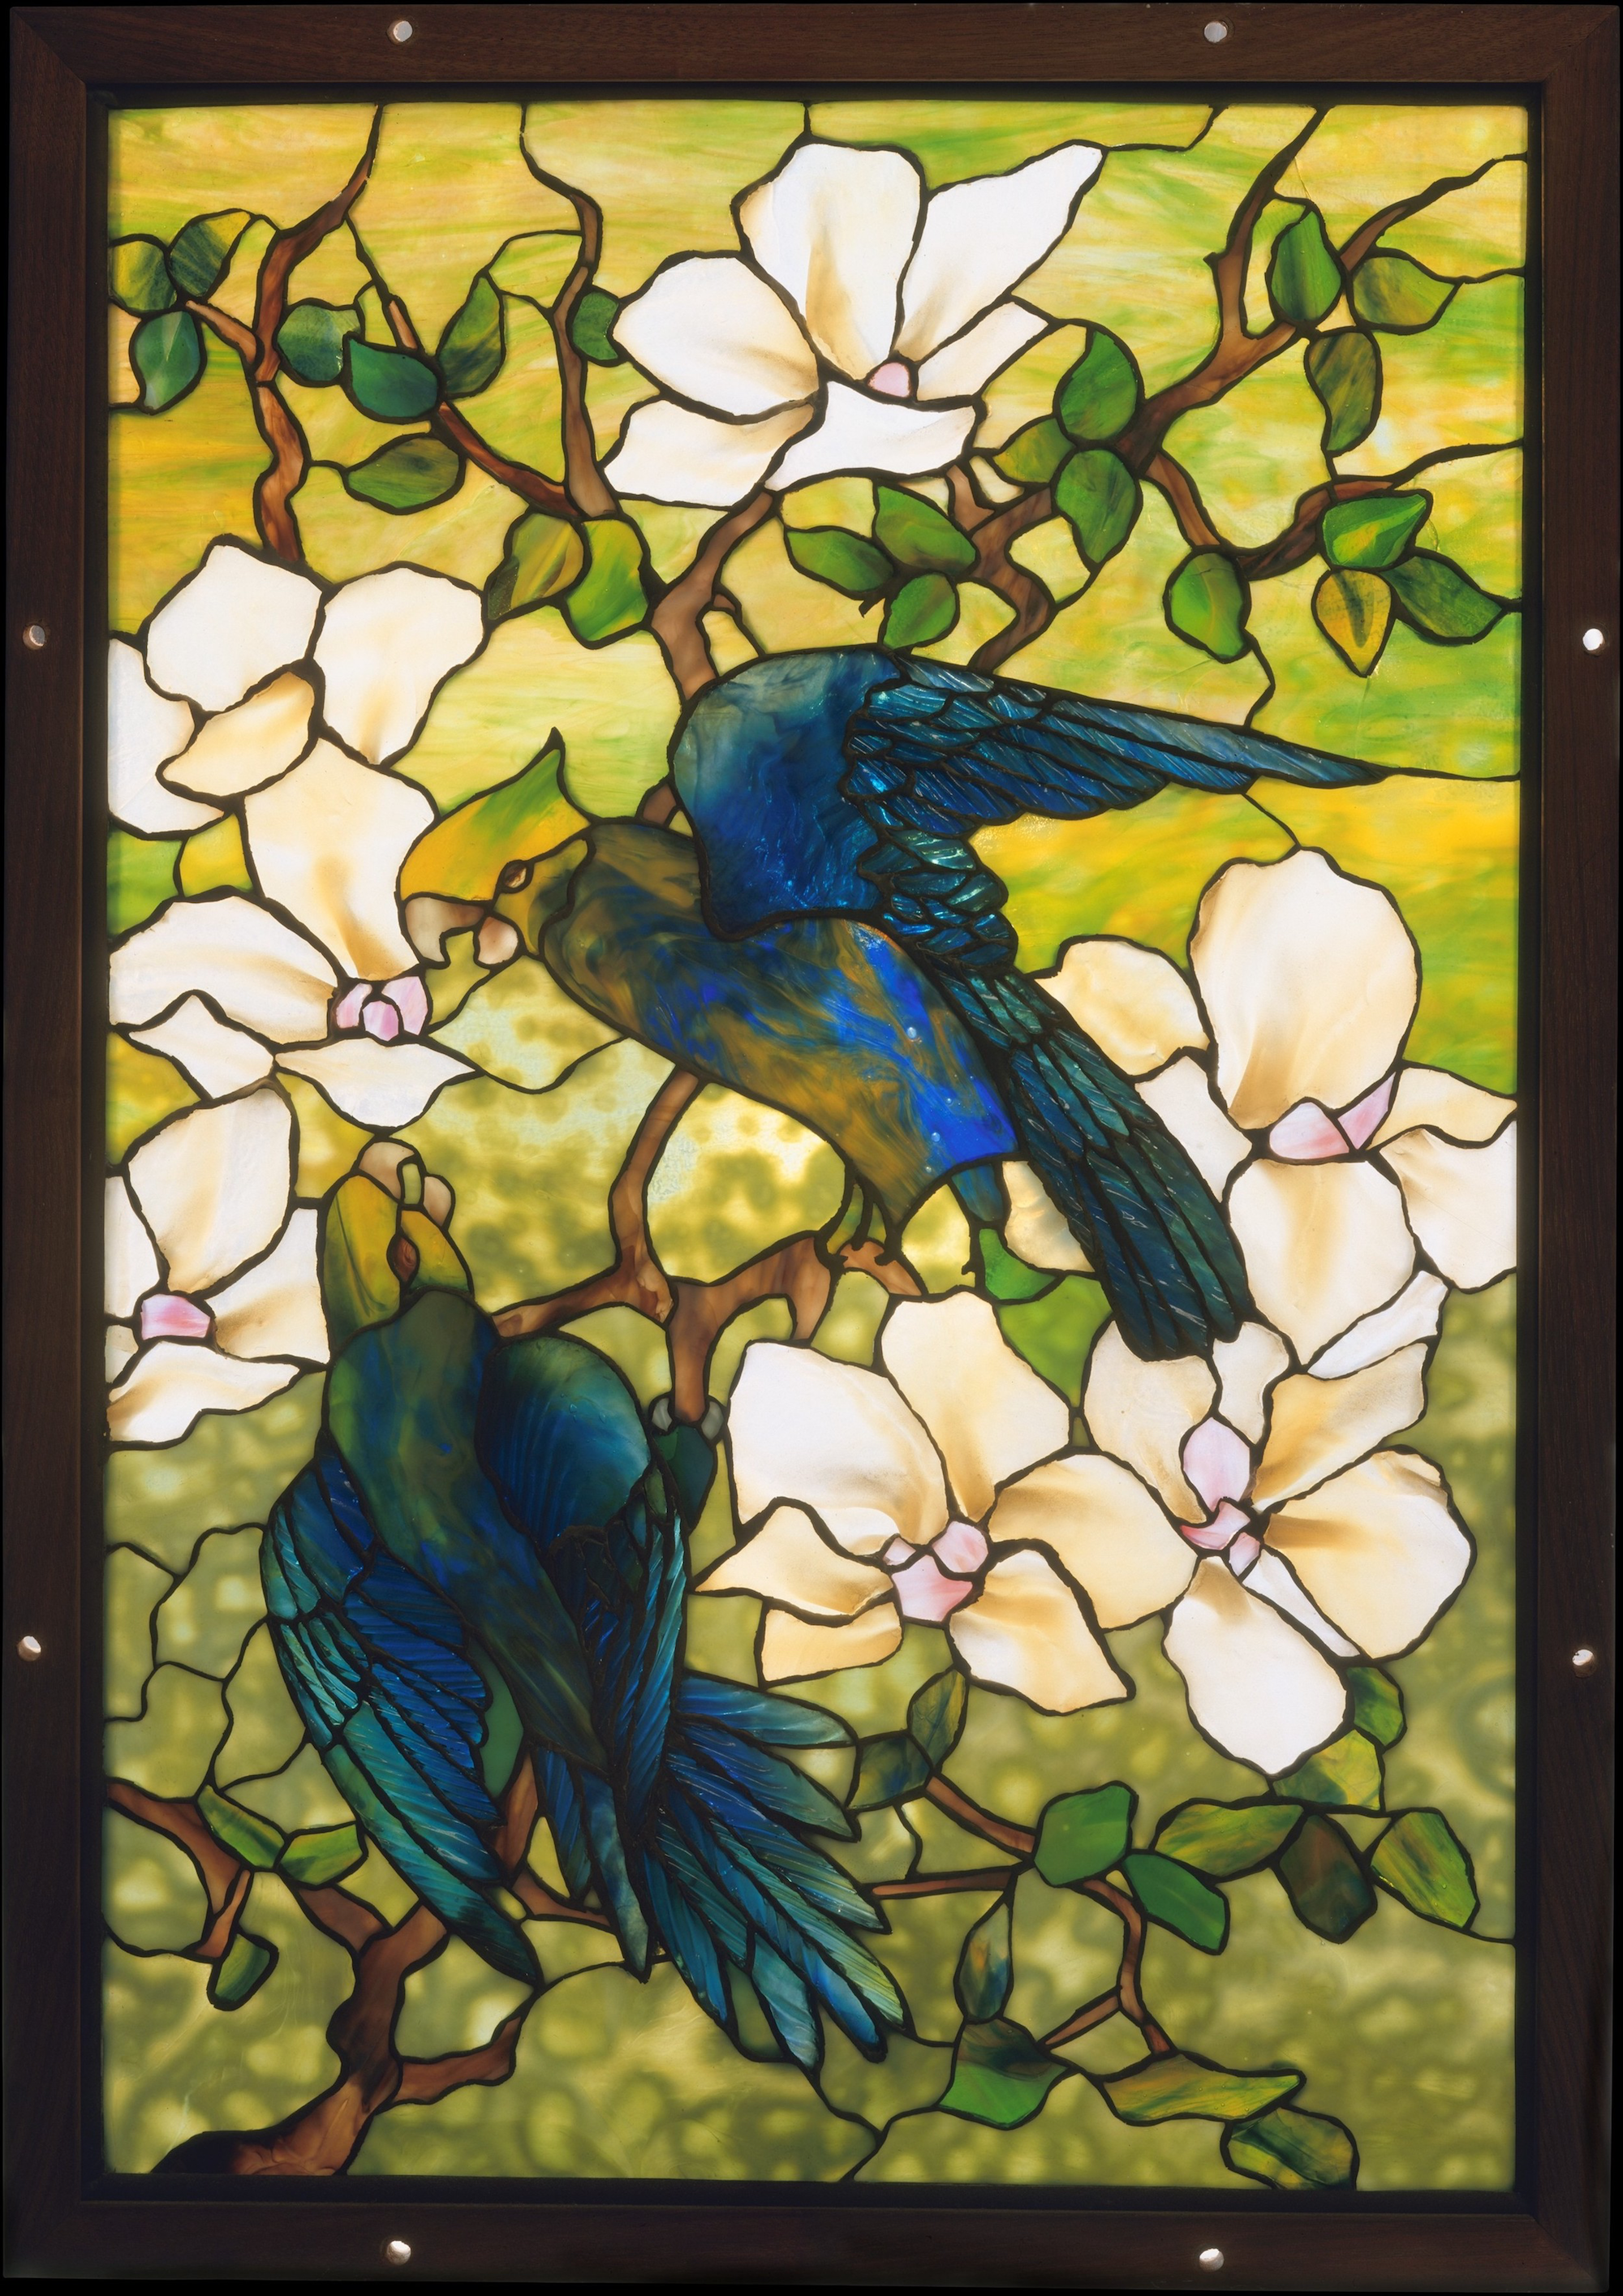 Hibiskus und Papageien by Louis Tiffany - ca. 1910–20 - 66 x 45.1 cm Metropolitan Museum of Art